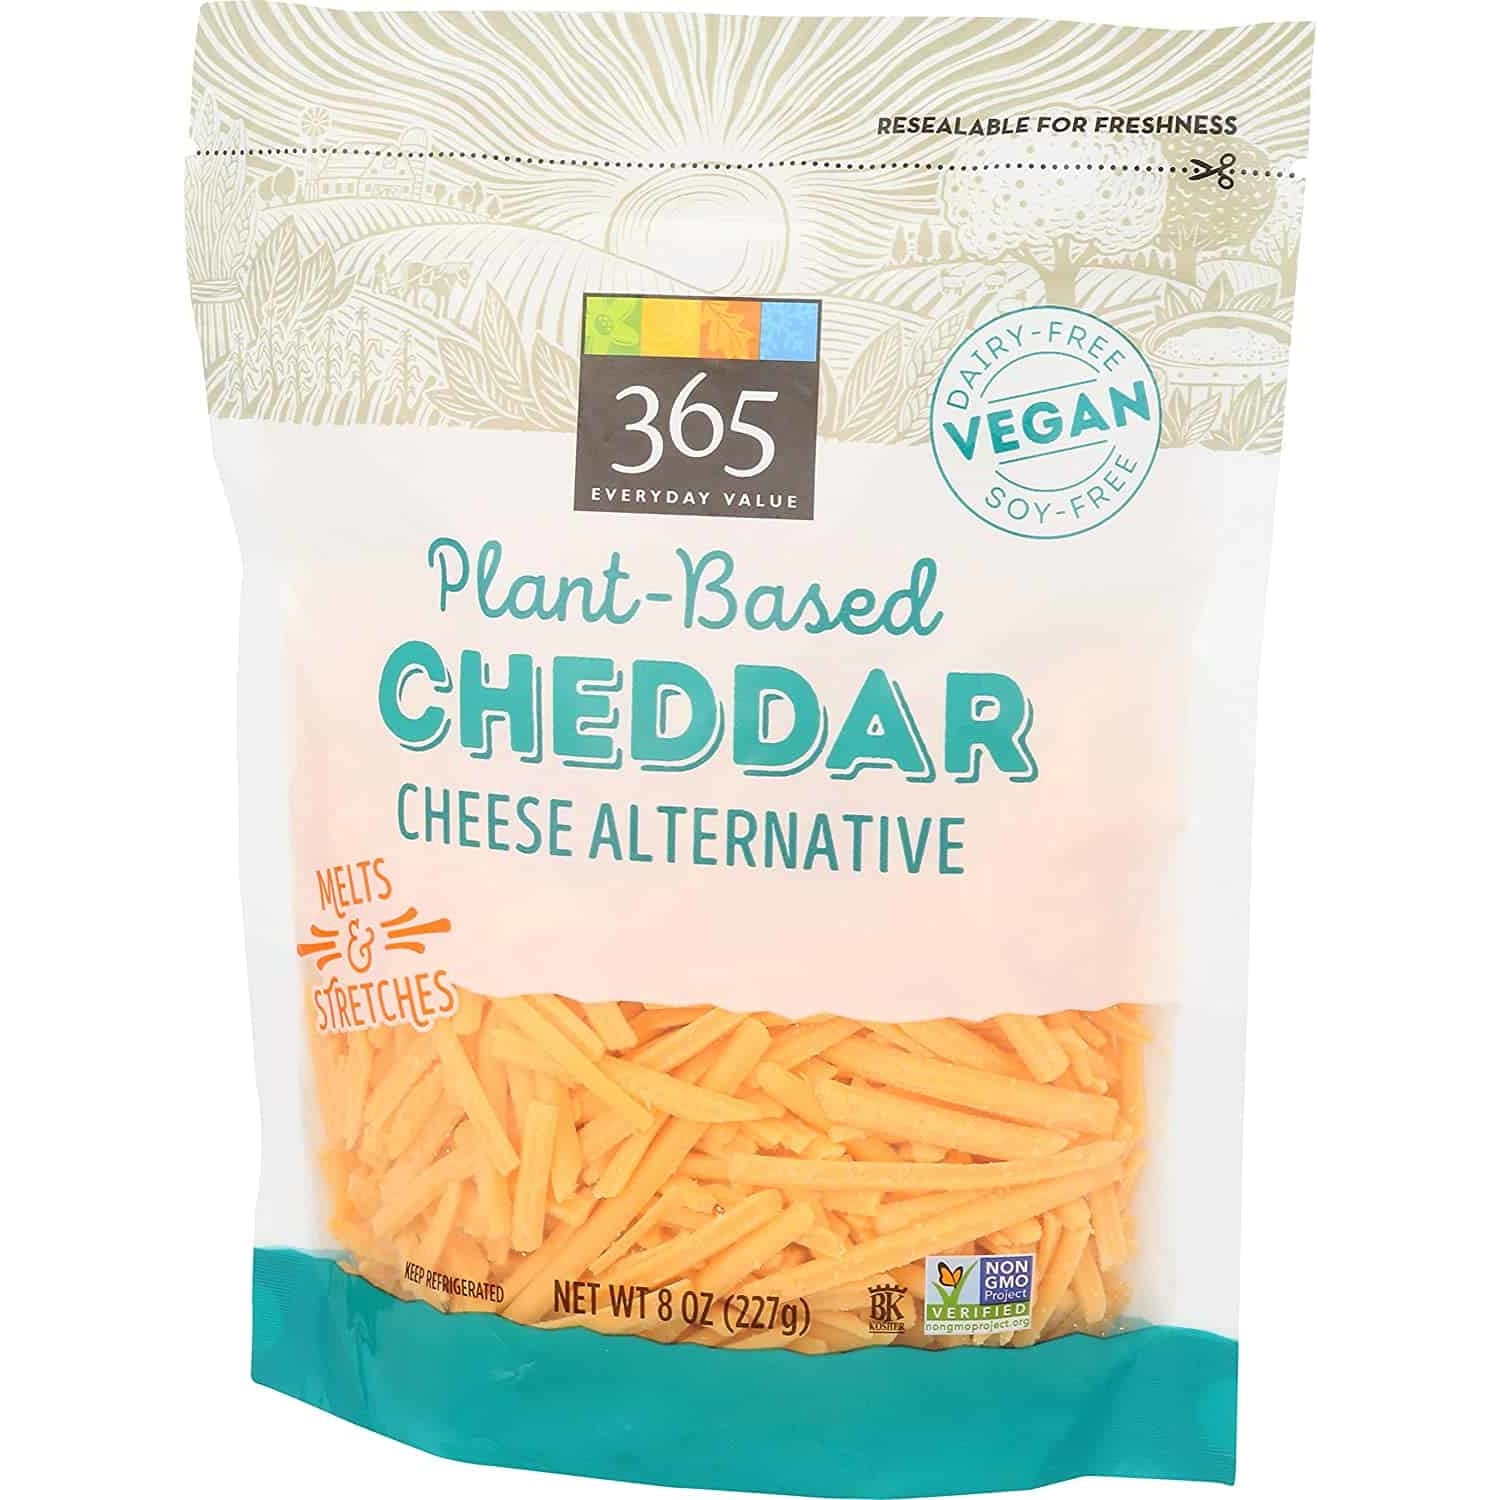 Plant-Based Cheddar Cheese Alternative, 8 oz